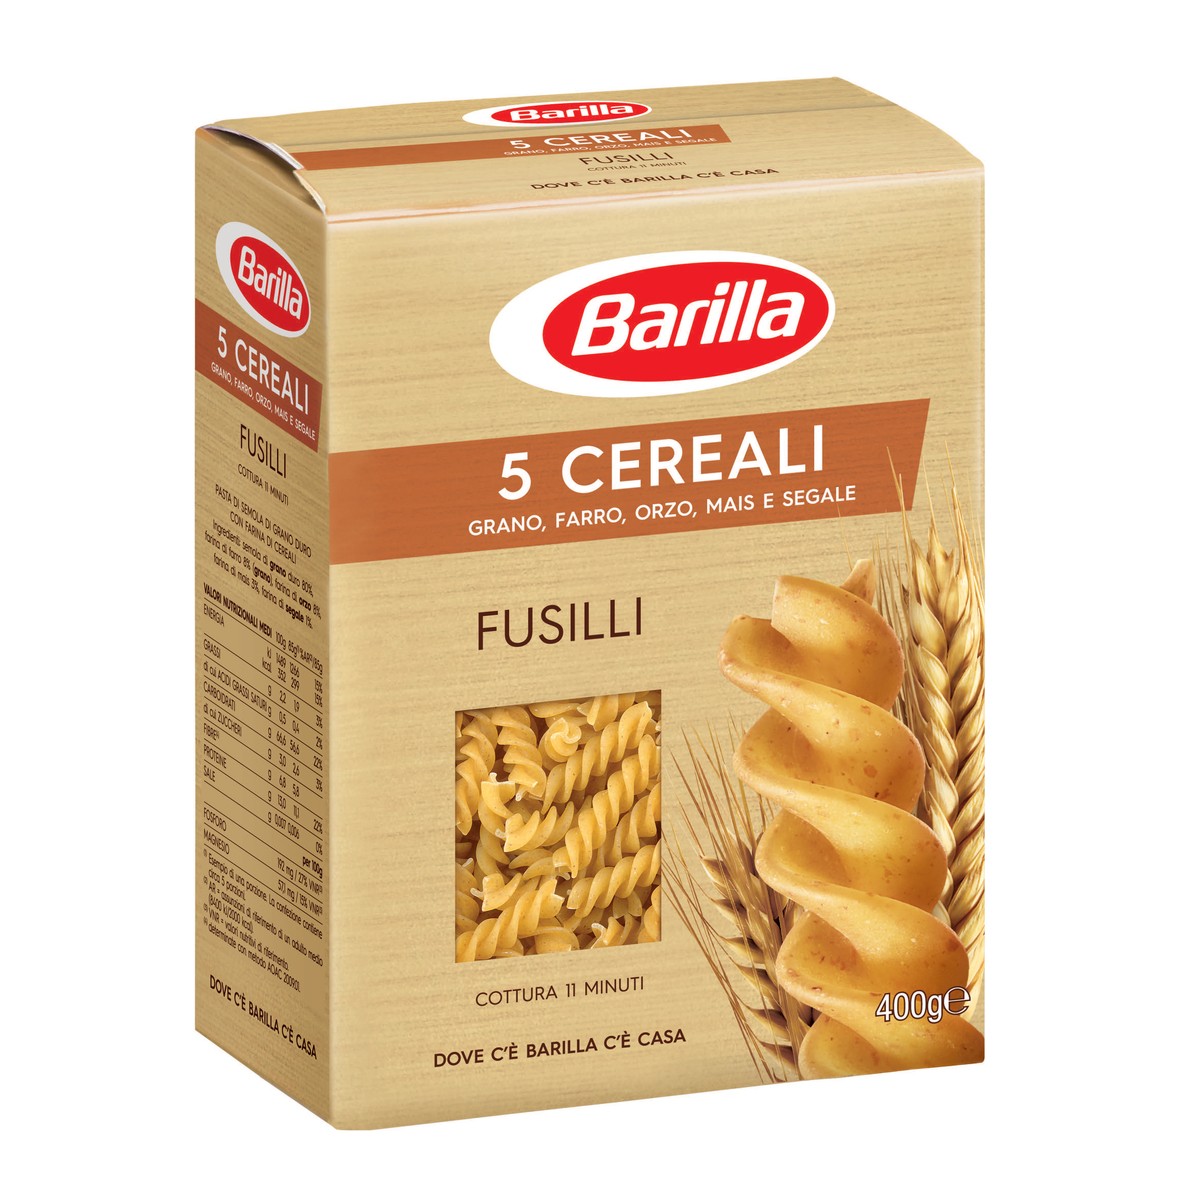 BARILLA Fusilli 5 Cereali